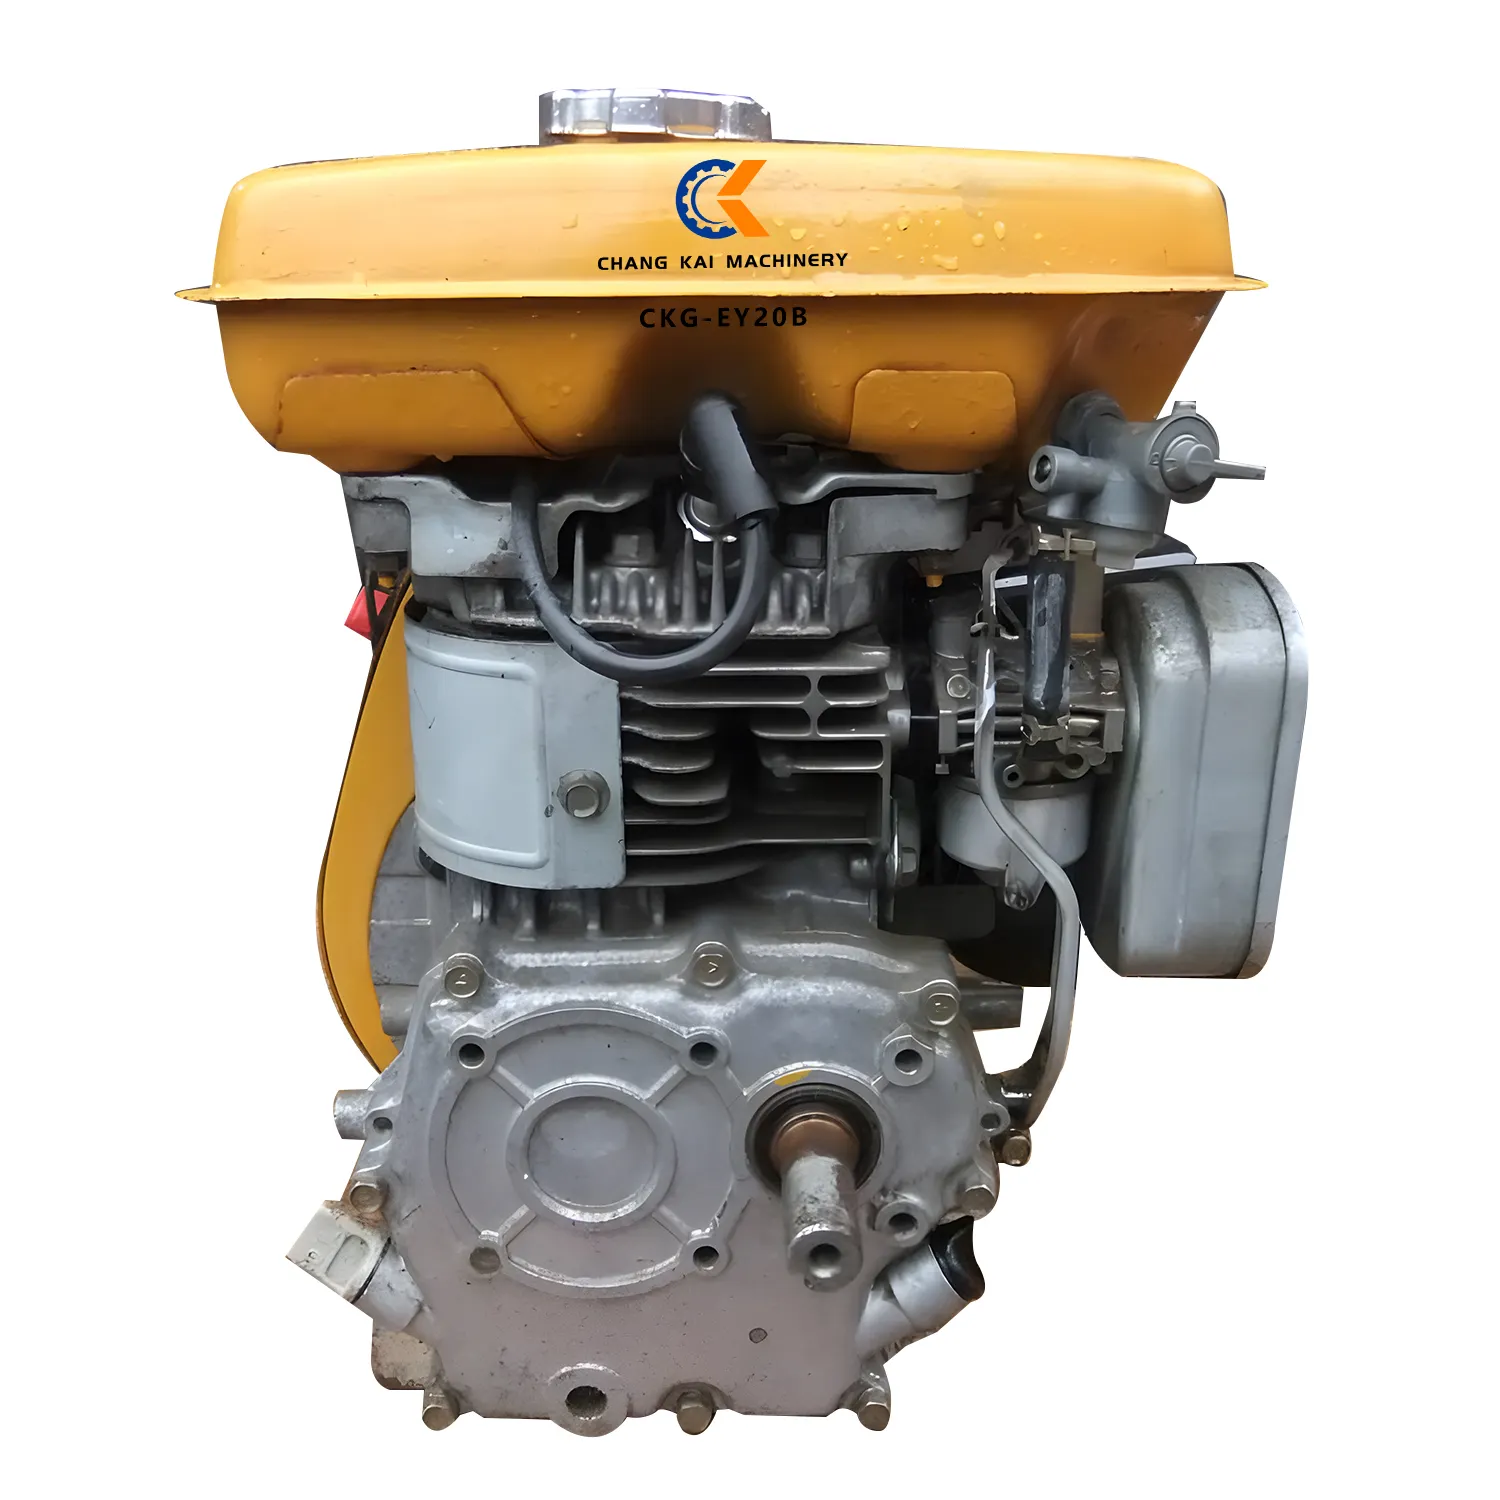 Motore di avviamento a rinculo inverso produttore CKG-EY20B EY20B modello compatibile con motore industriale monocilindrico verticale